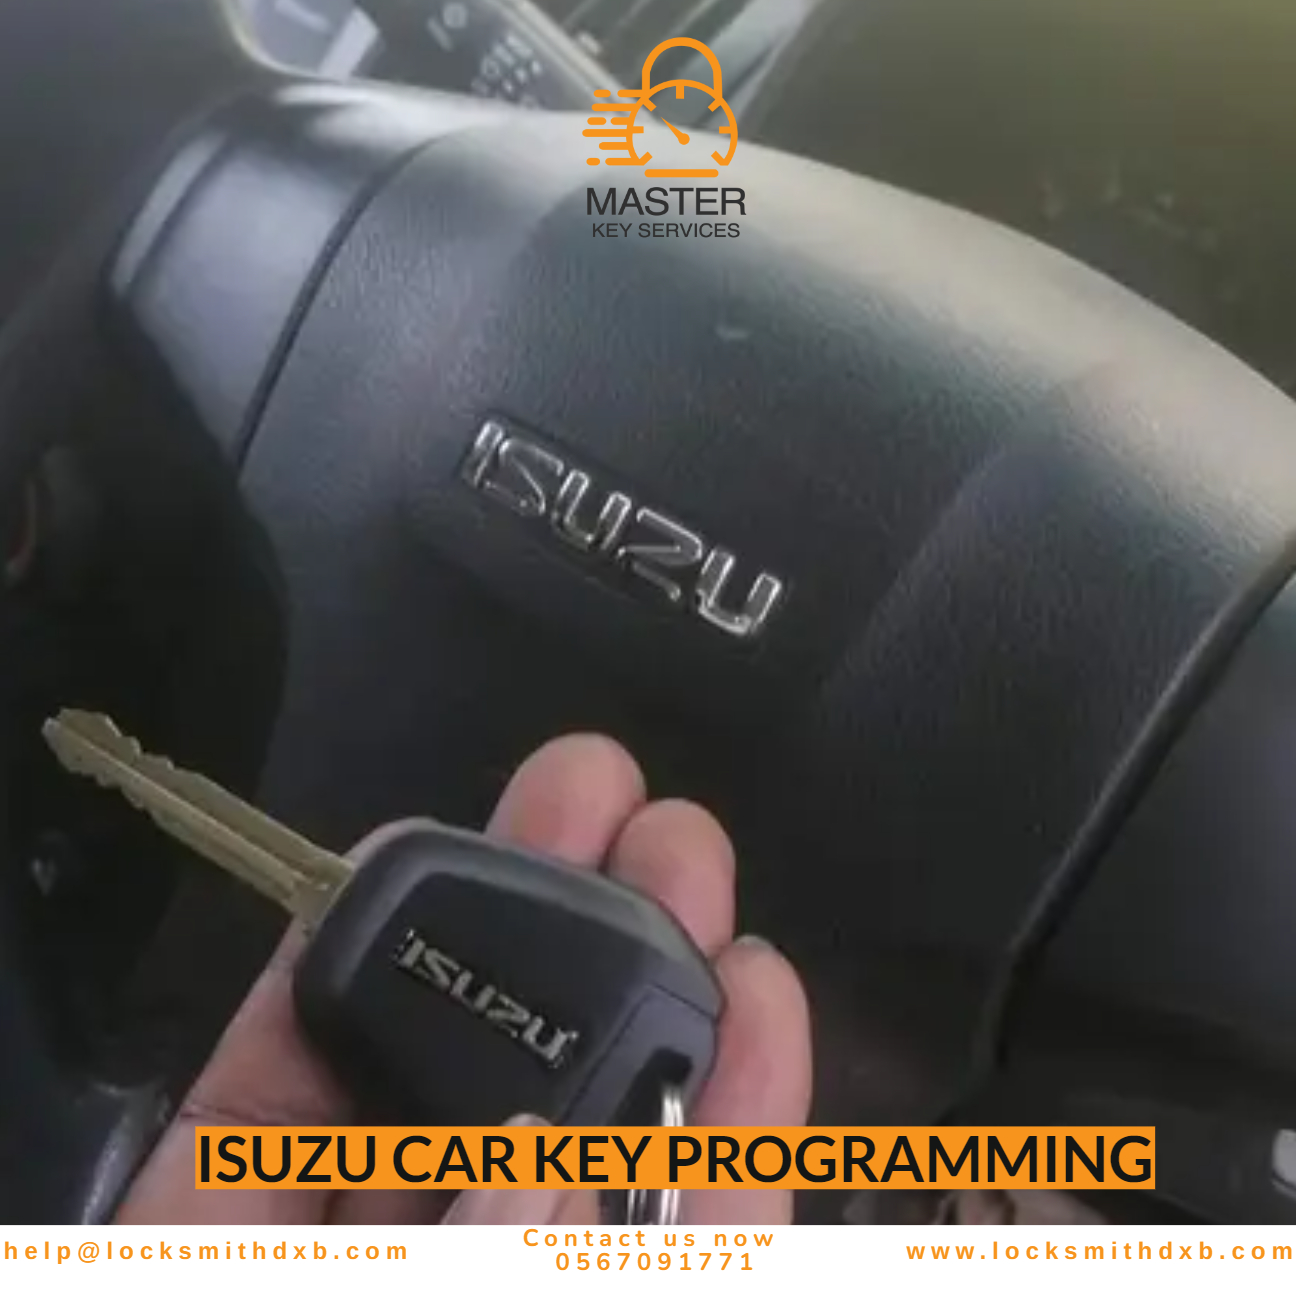 ISUZU car key programming